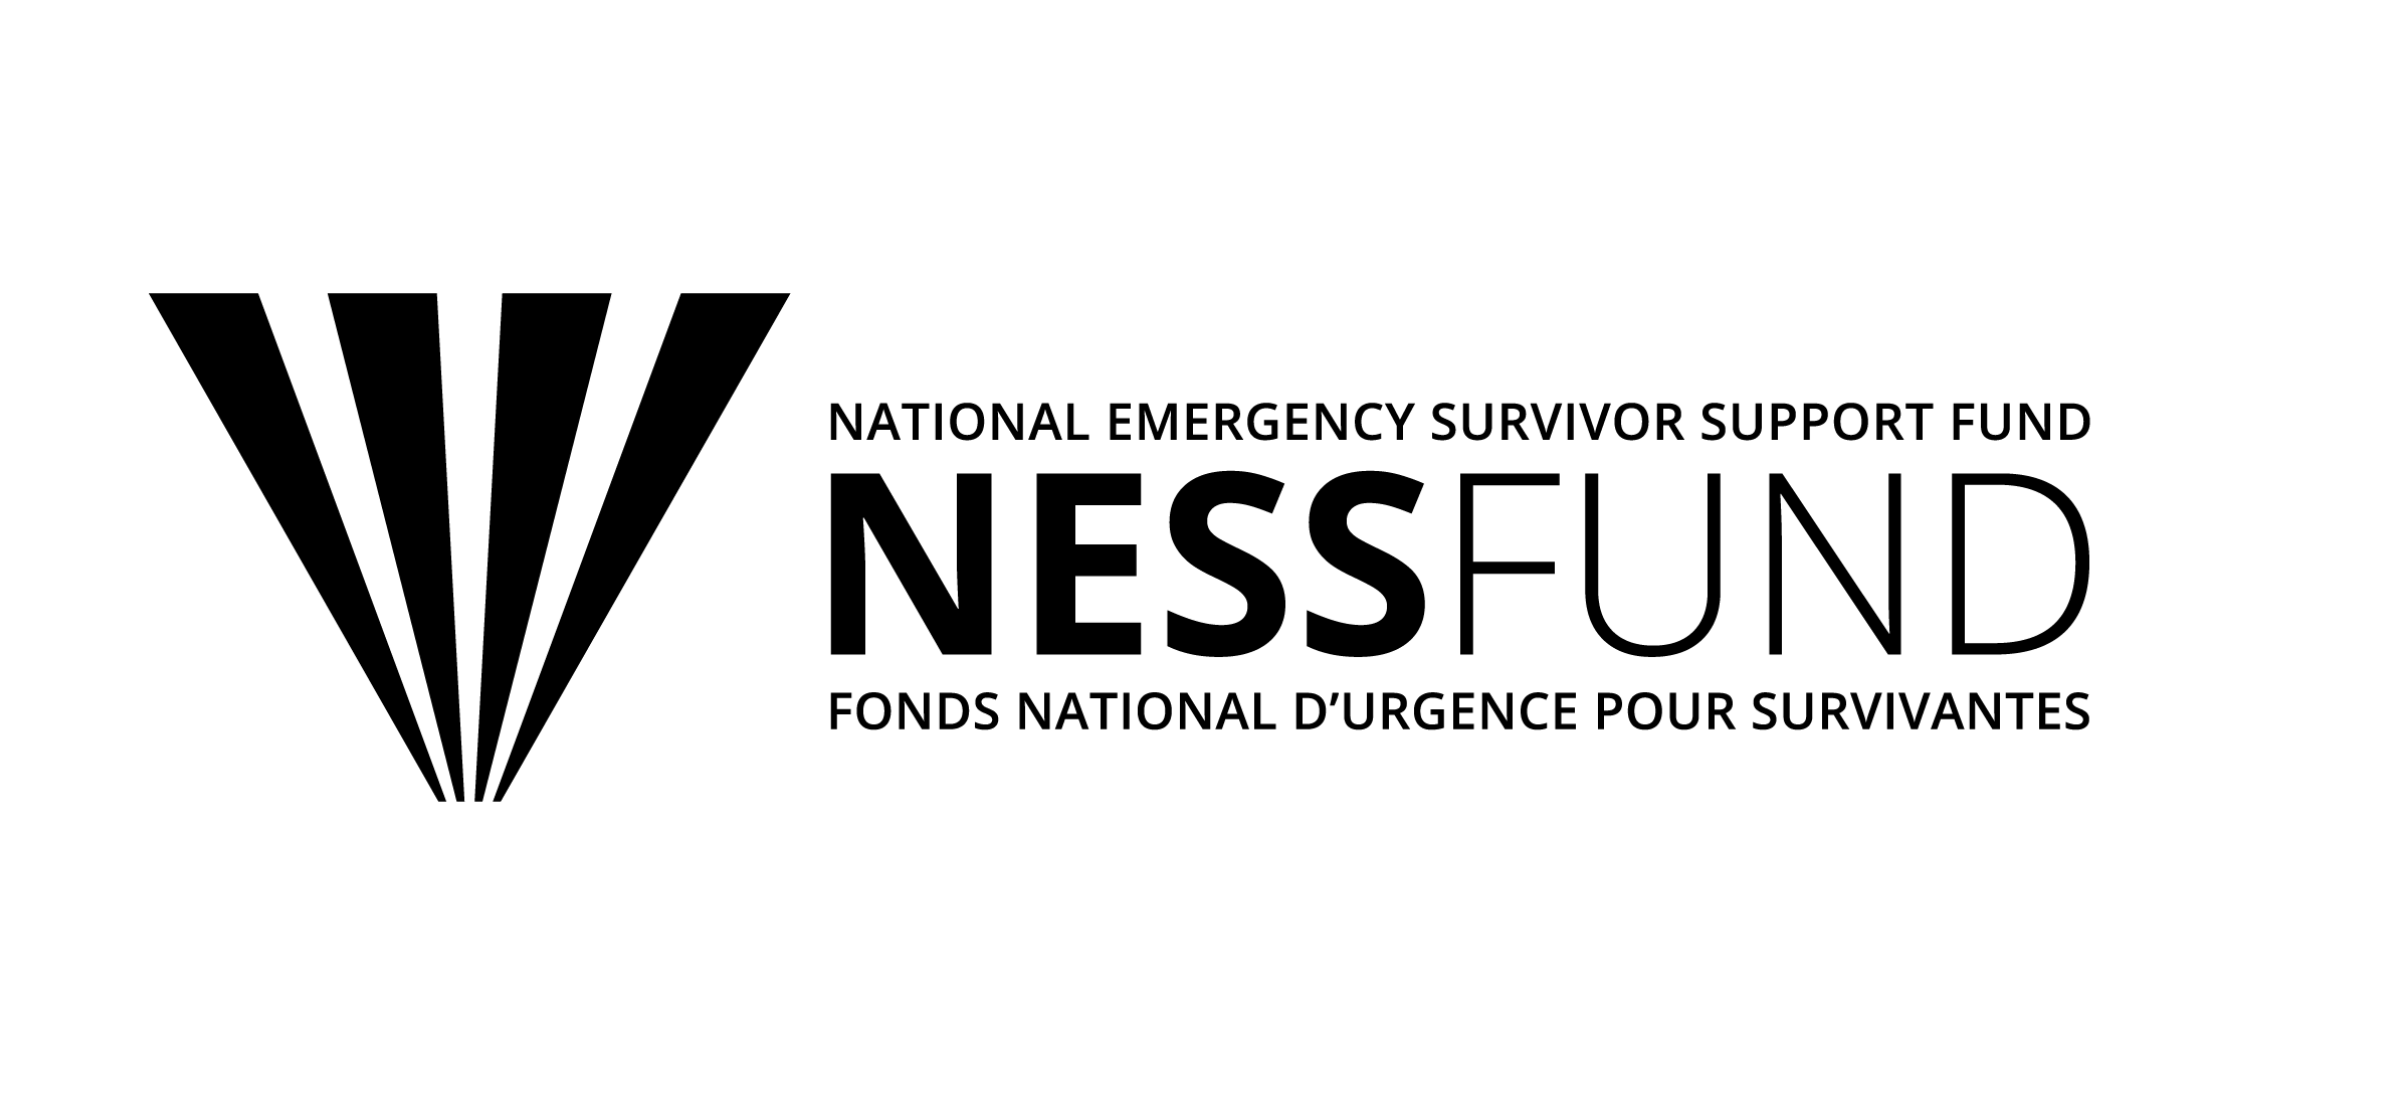 National Emergency Survivor Support Fund logo